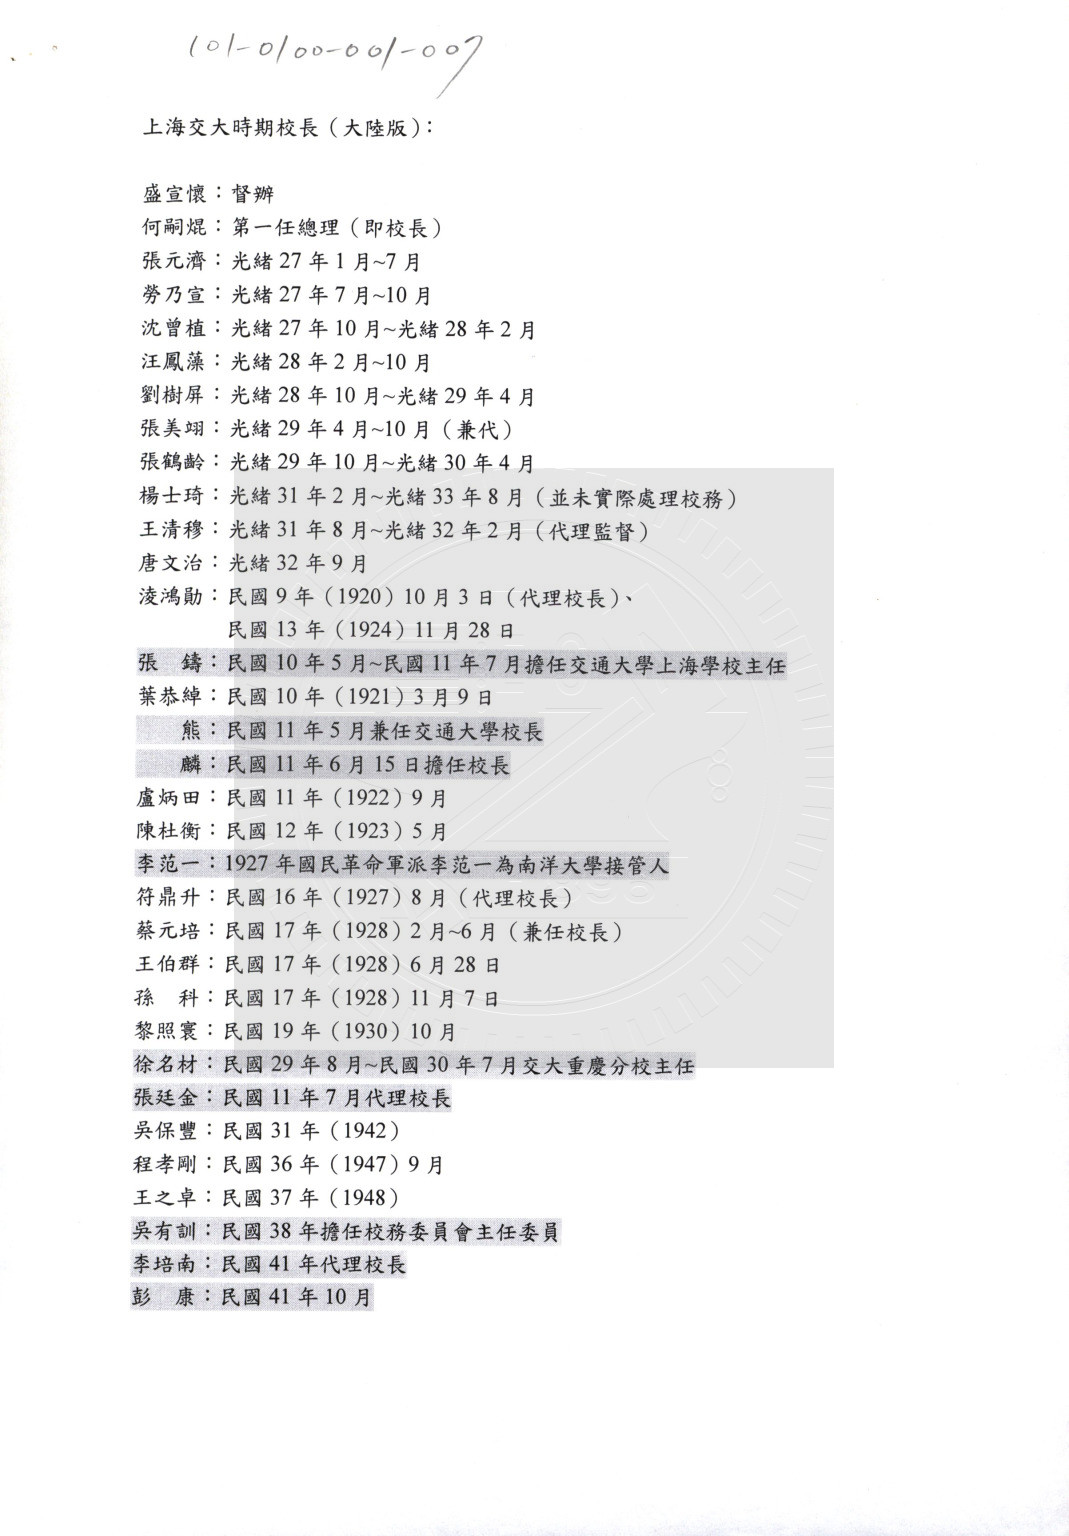 上海交大時期校長一覽表 (大陸版、台灣版)